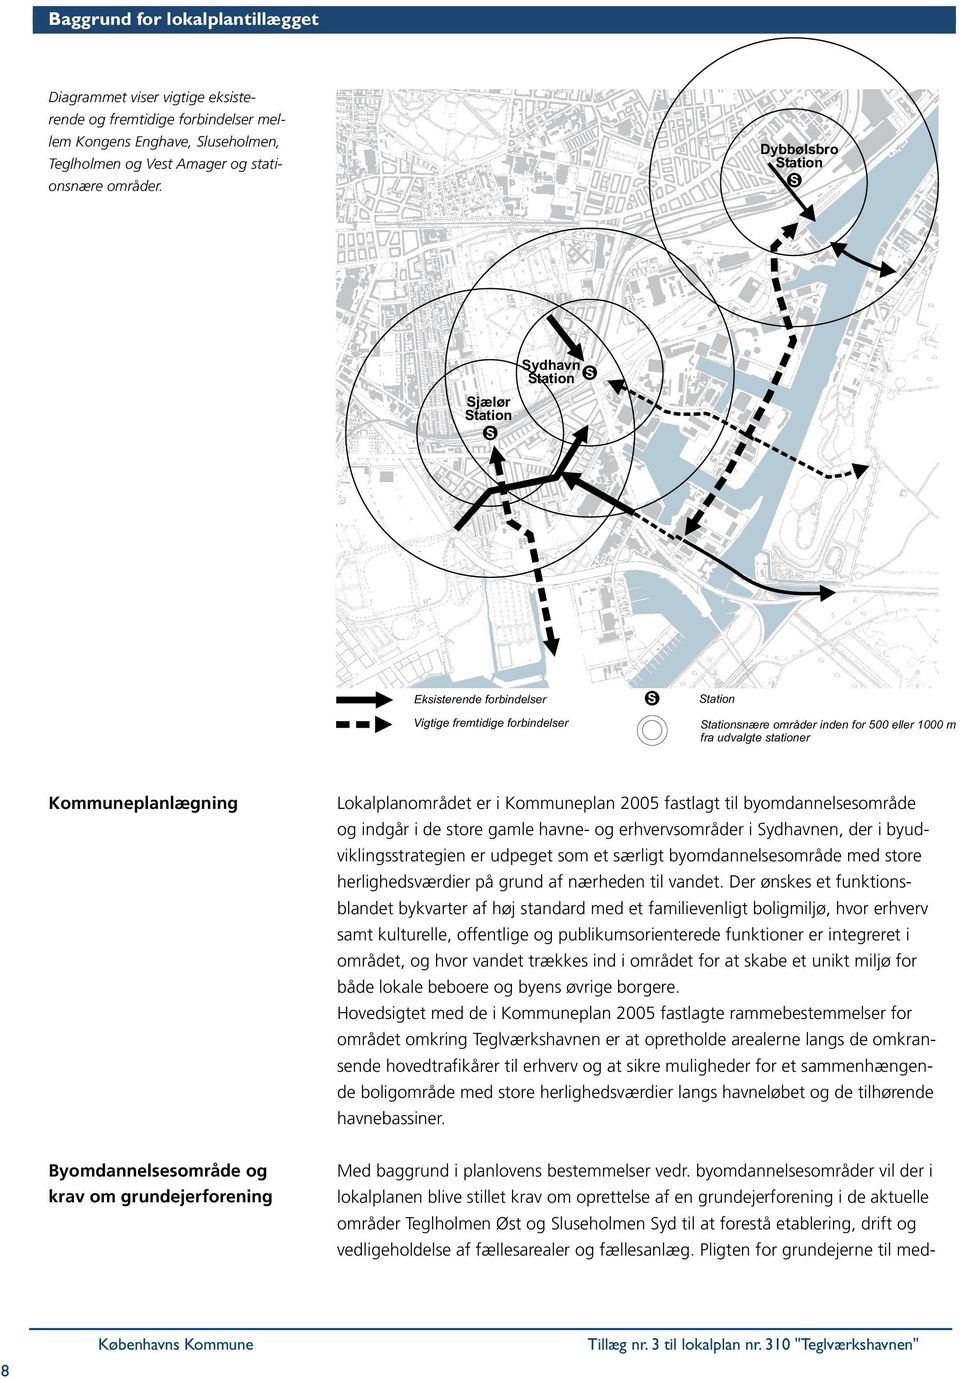 Kommuneplanlægning Lokalplanområdet er i Kommuneplan 2005 fastlagt til byomdannelsesområde og indgår i de store gamle havne- og erhvervsområder i Sydhavnen, der i byudviklingsstrategien er udpeget